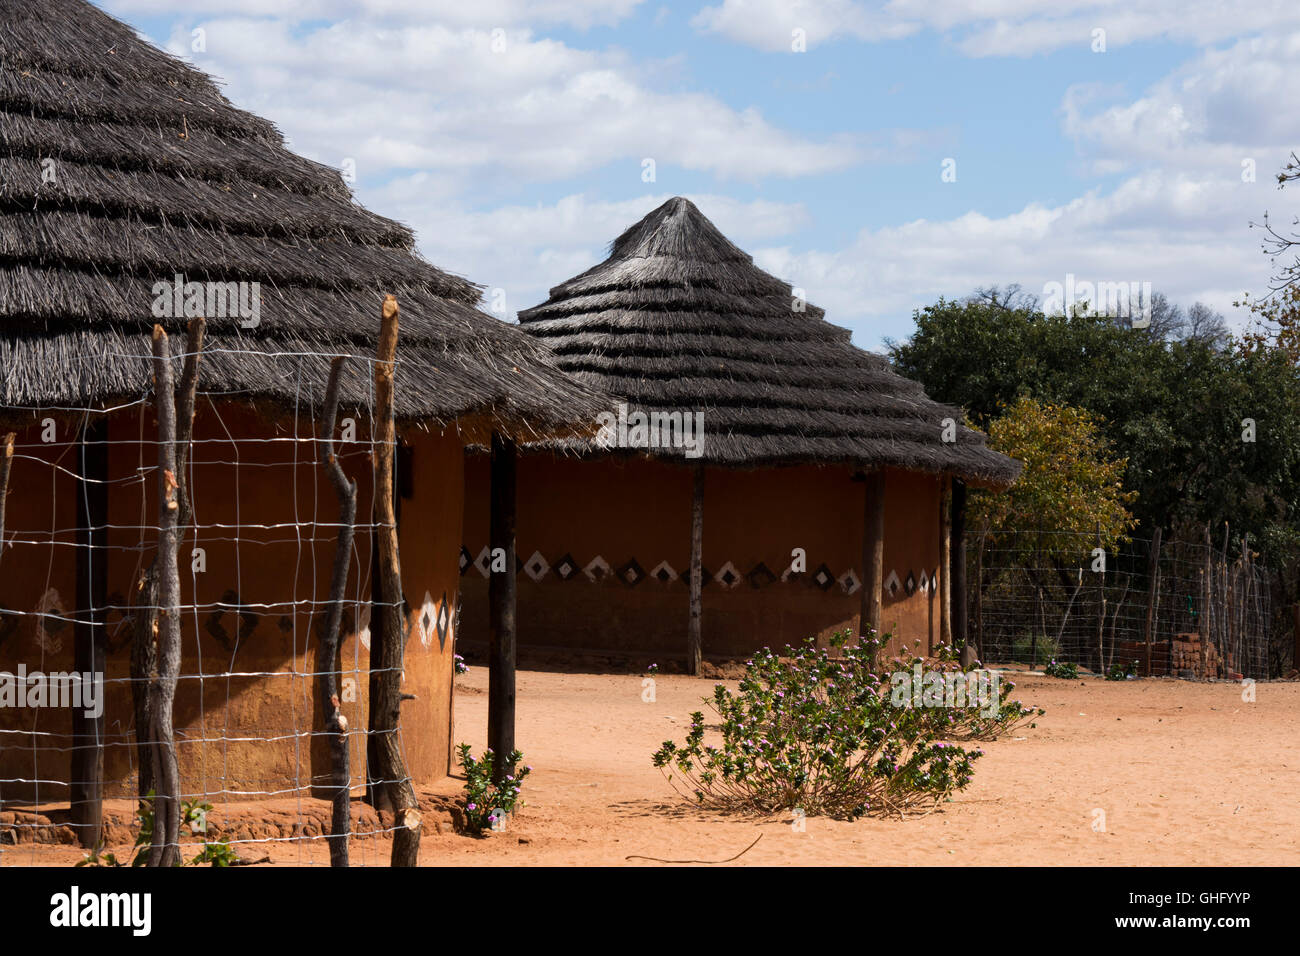 KO MPISI VILLAGE un village typique de l'Afrique au Zimbabwe, près de The Victoria Falls National Park Banque D'Images